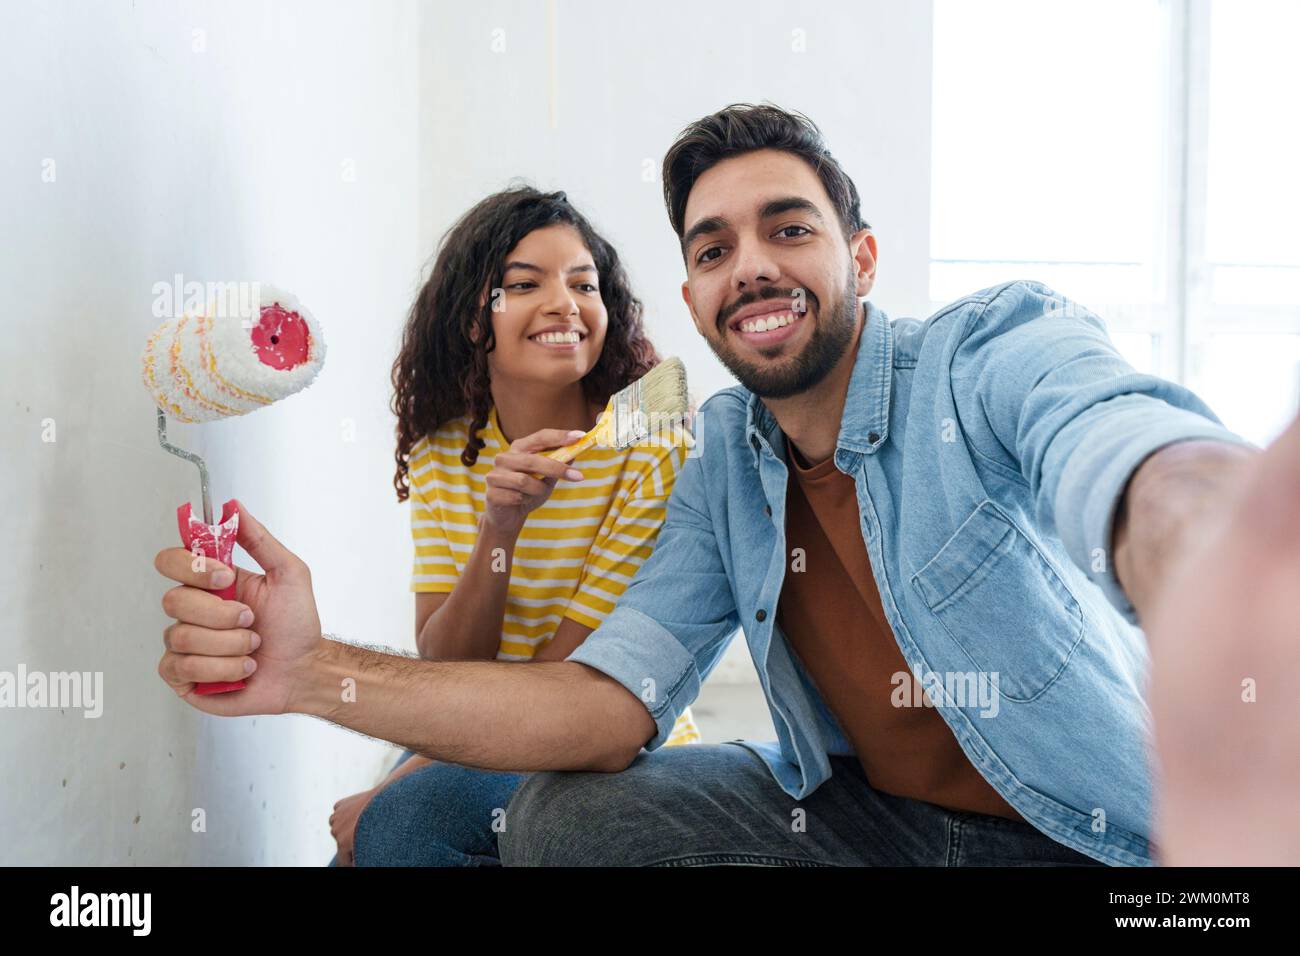 Verspieltes Paar mit Malausrüstung, das Selfie in einem neuen Zuhause macht Stockfoto